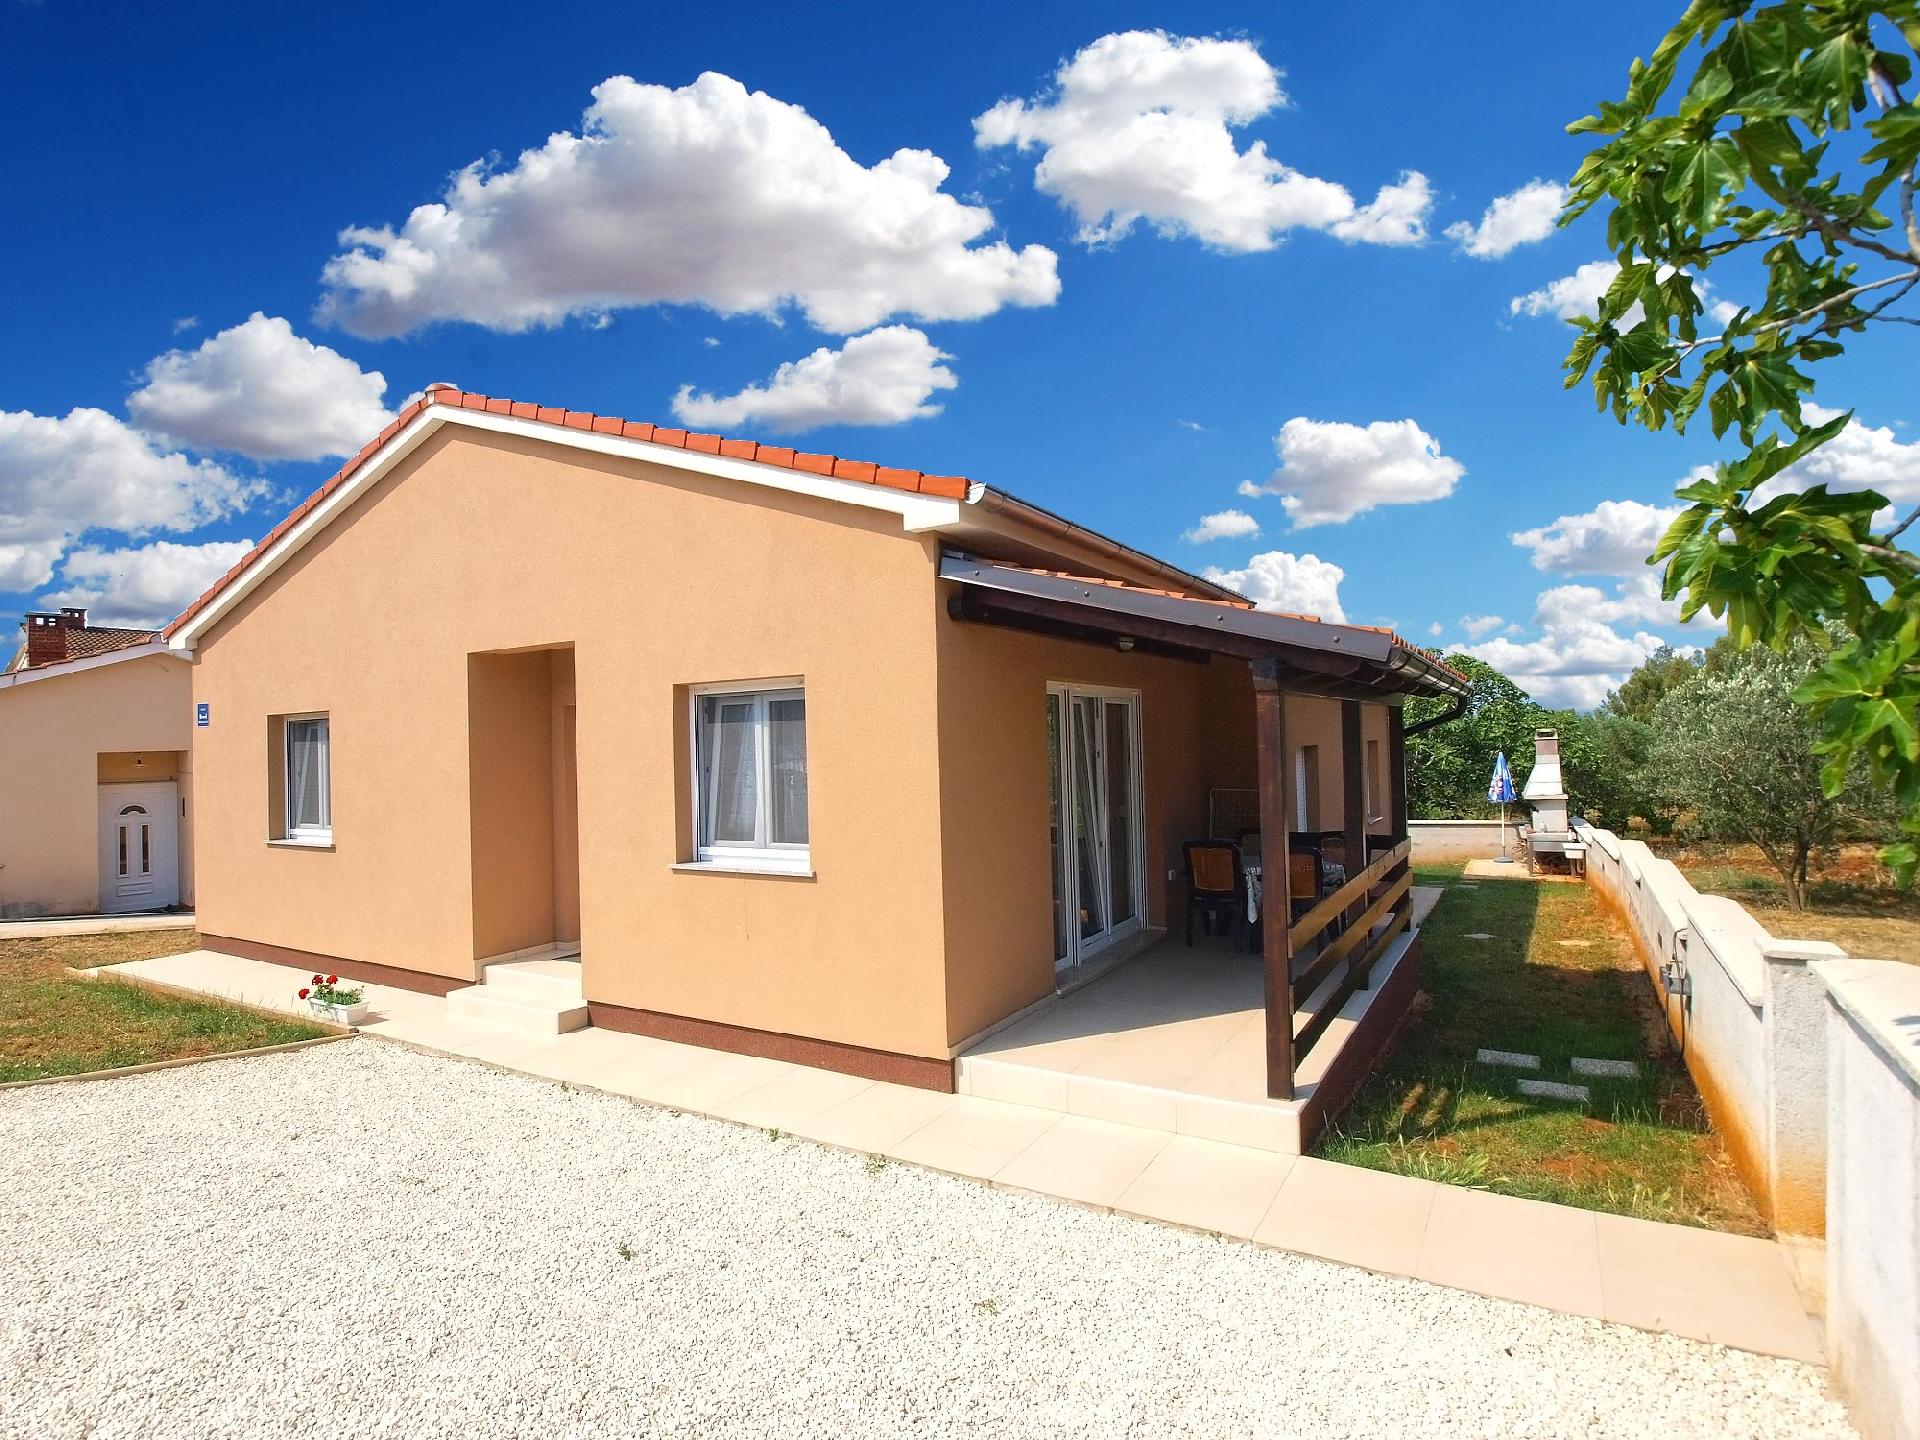 Ferienwohnung für 4 Personen ca. 42 m² i  in Kroatien